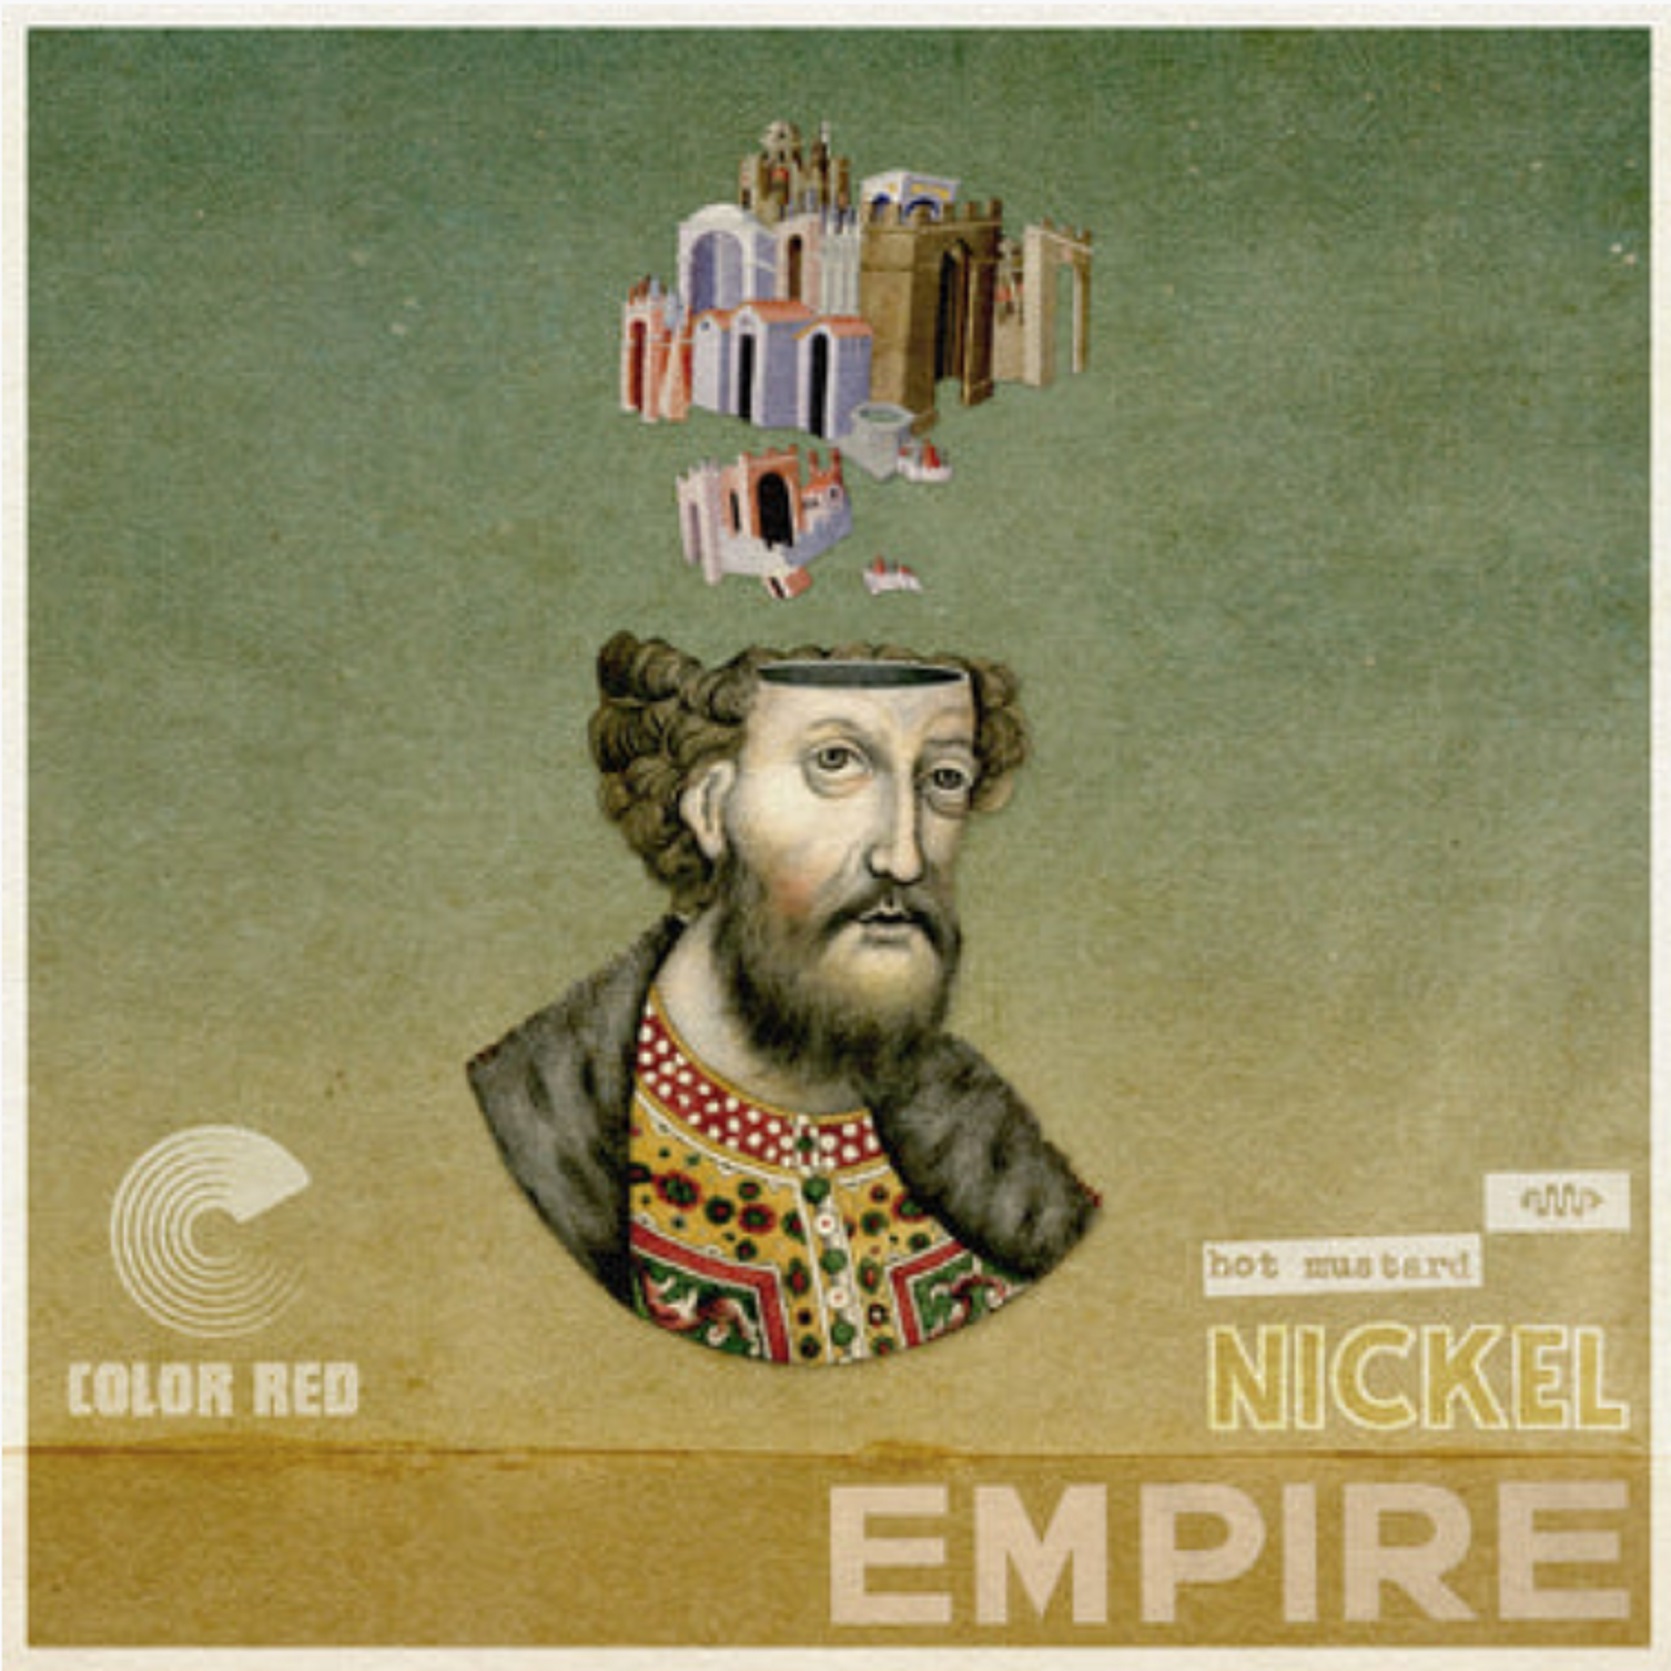 Hot Mustard just released "Nickel Empire"